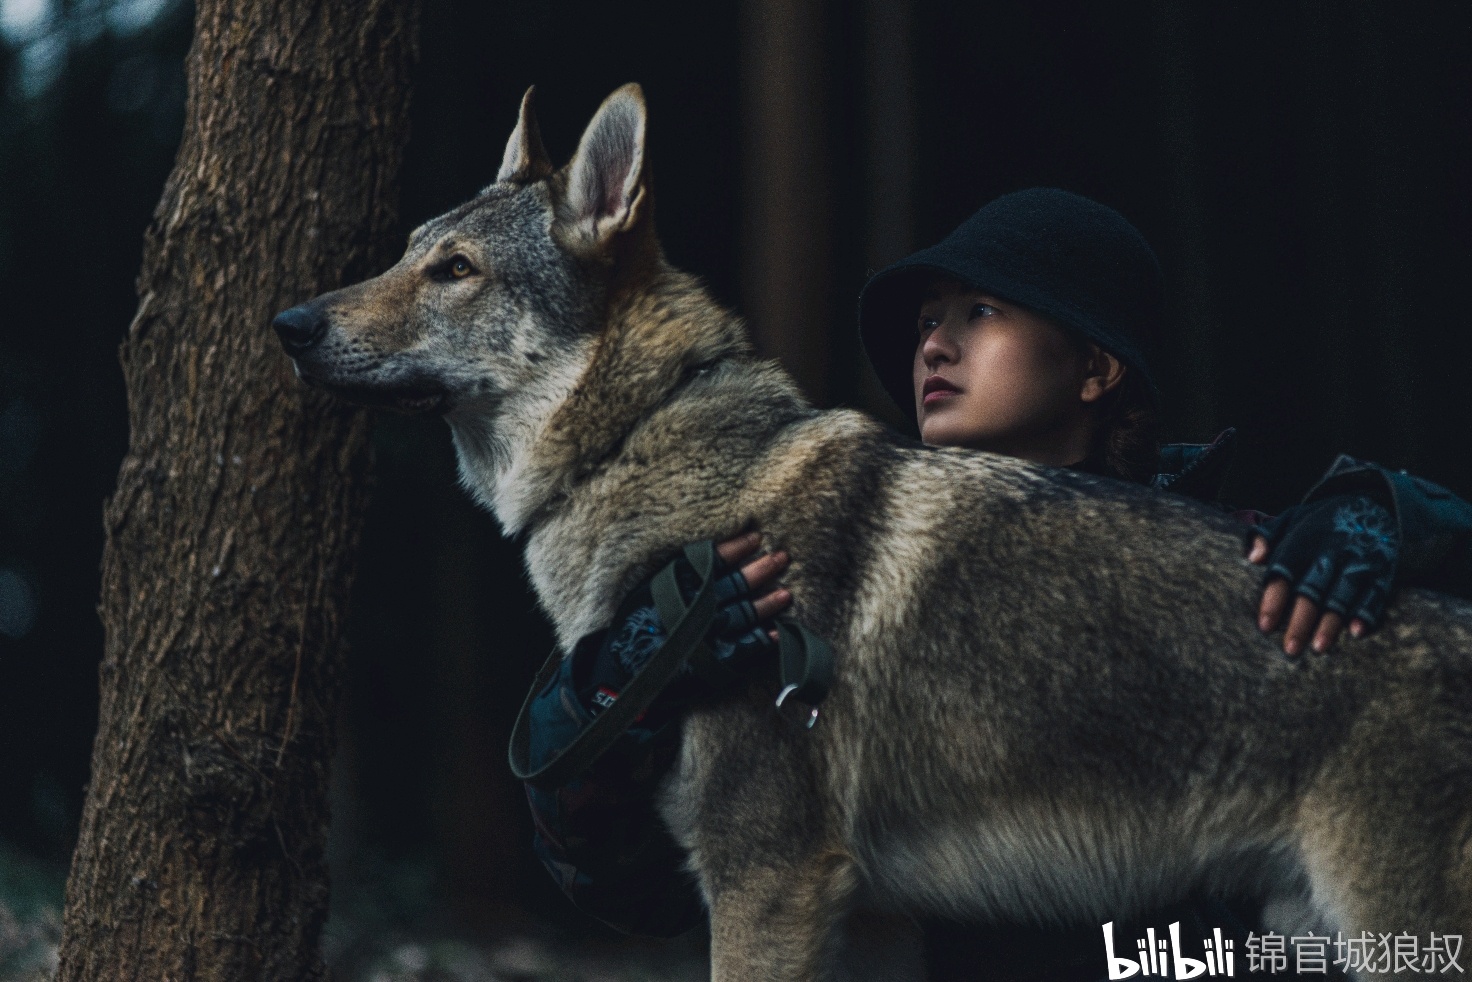 养捷克狼犬是怎样一种体验？